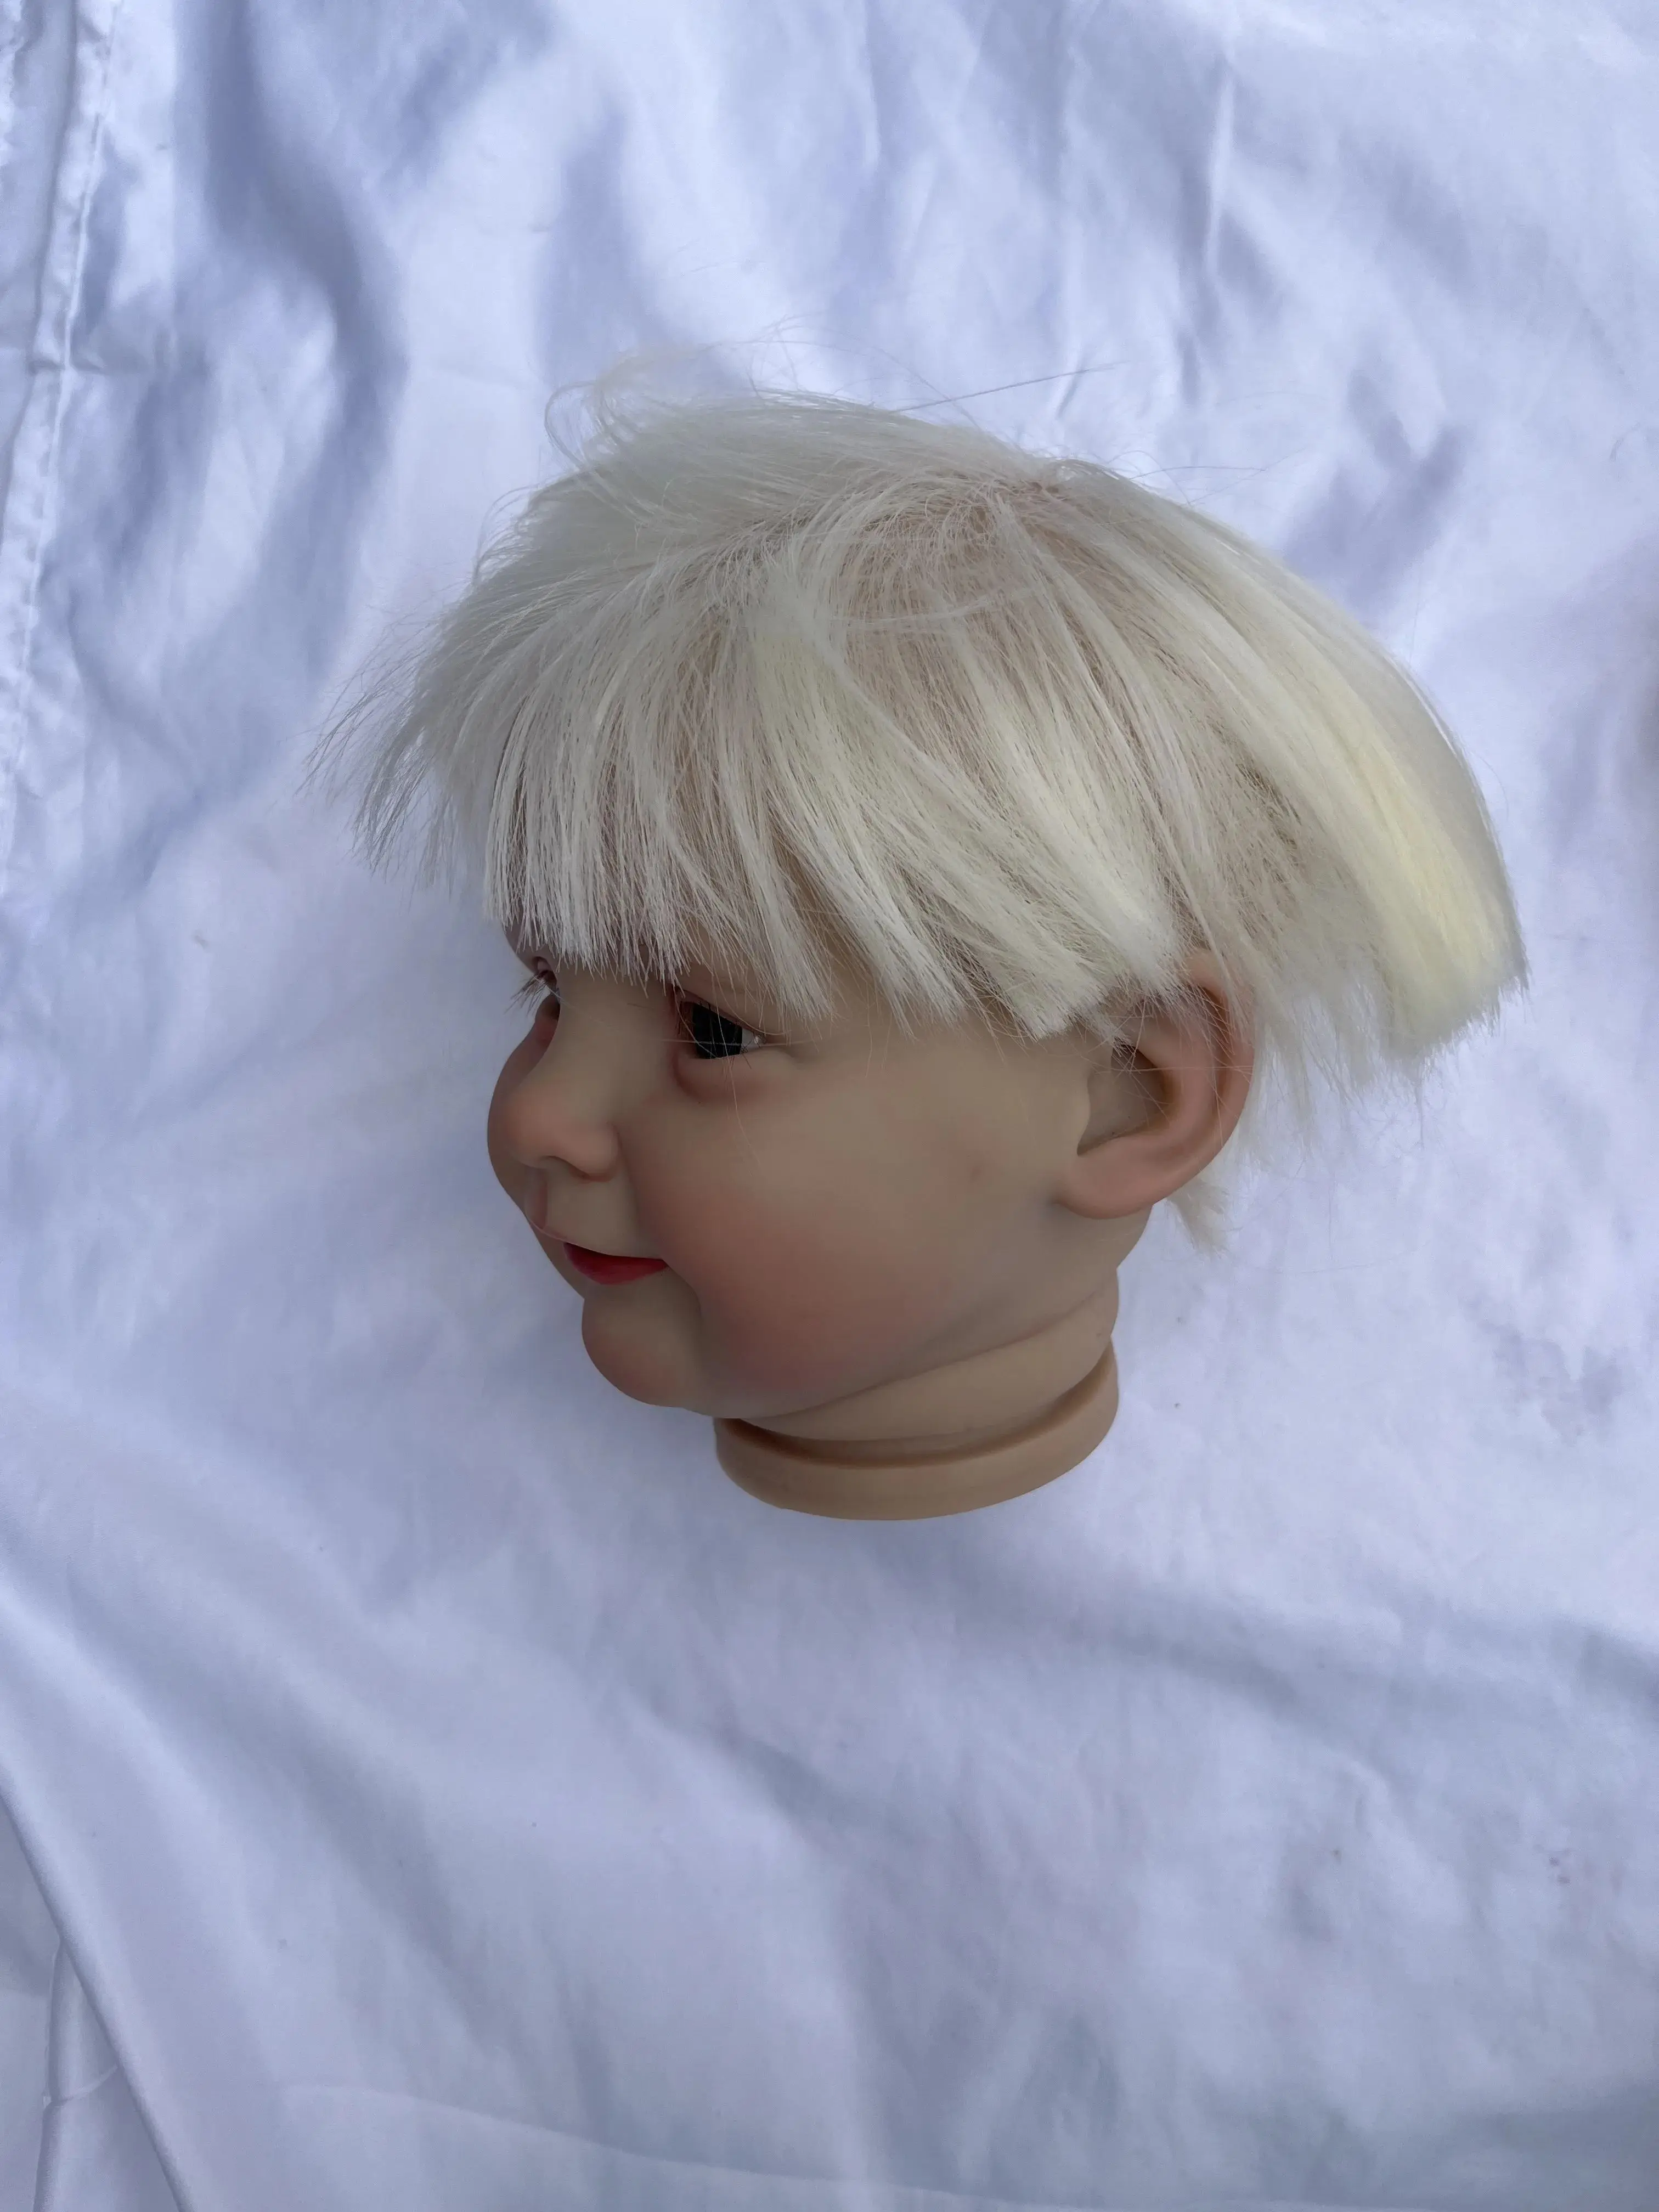 FBBD Individualų Tik Supply26inch Reborn Baby Doll Zoe Su Ranka-Įsišakniję Plaukų Dažyti 